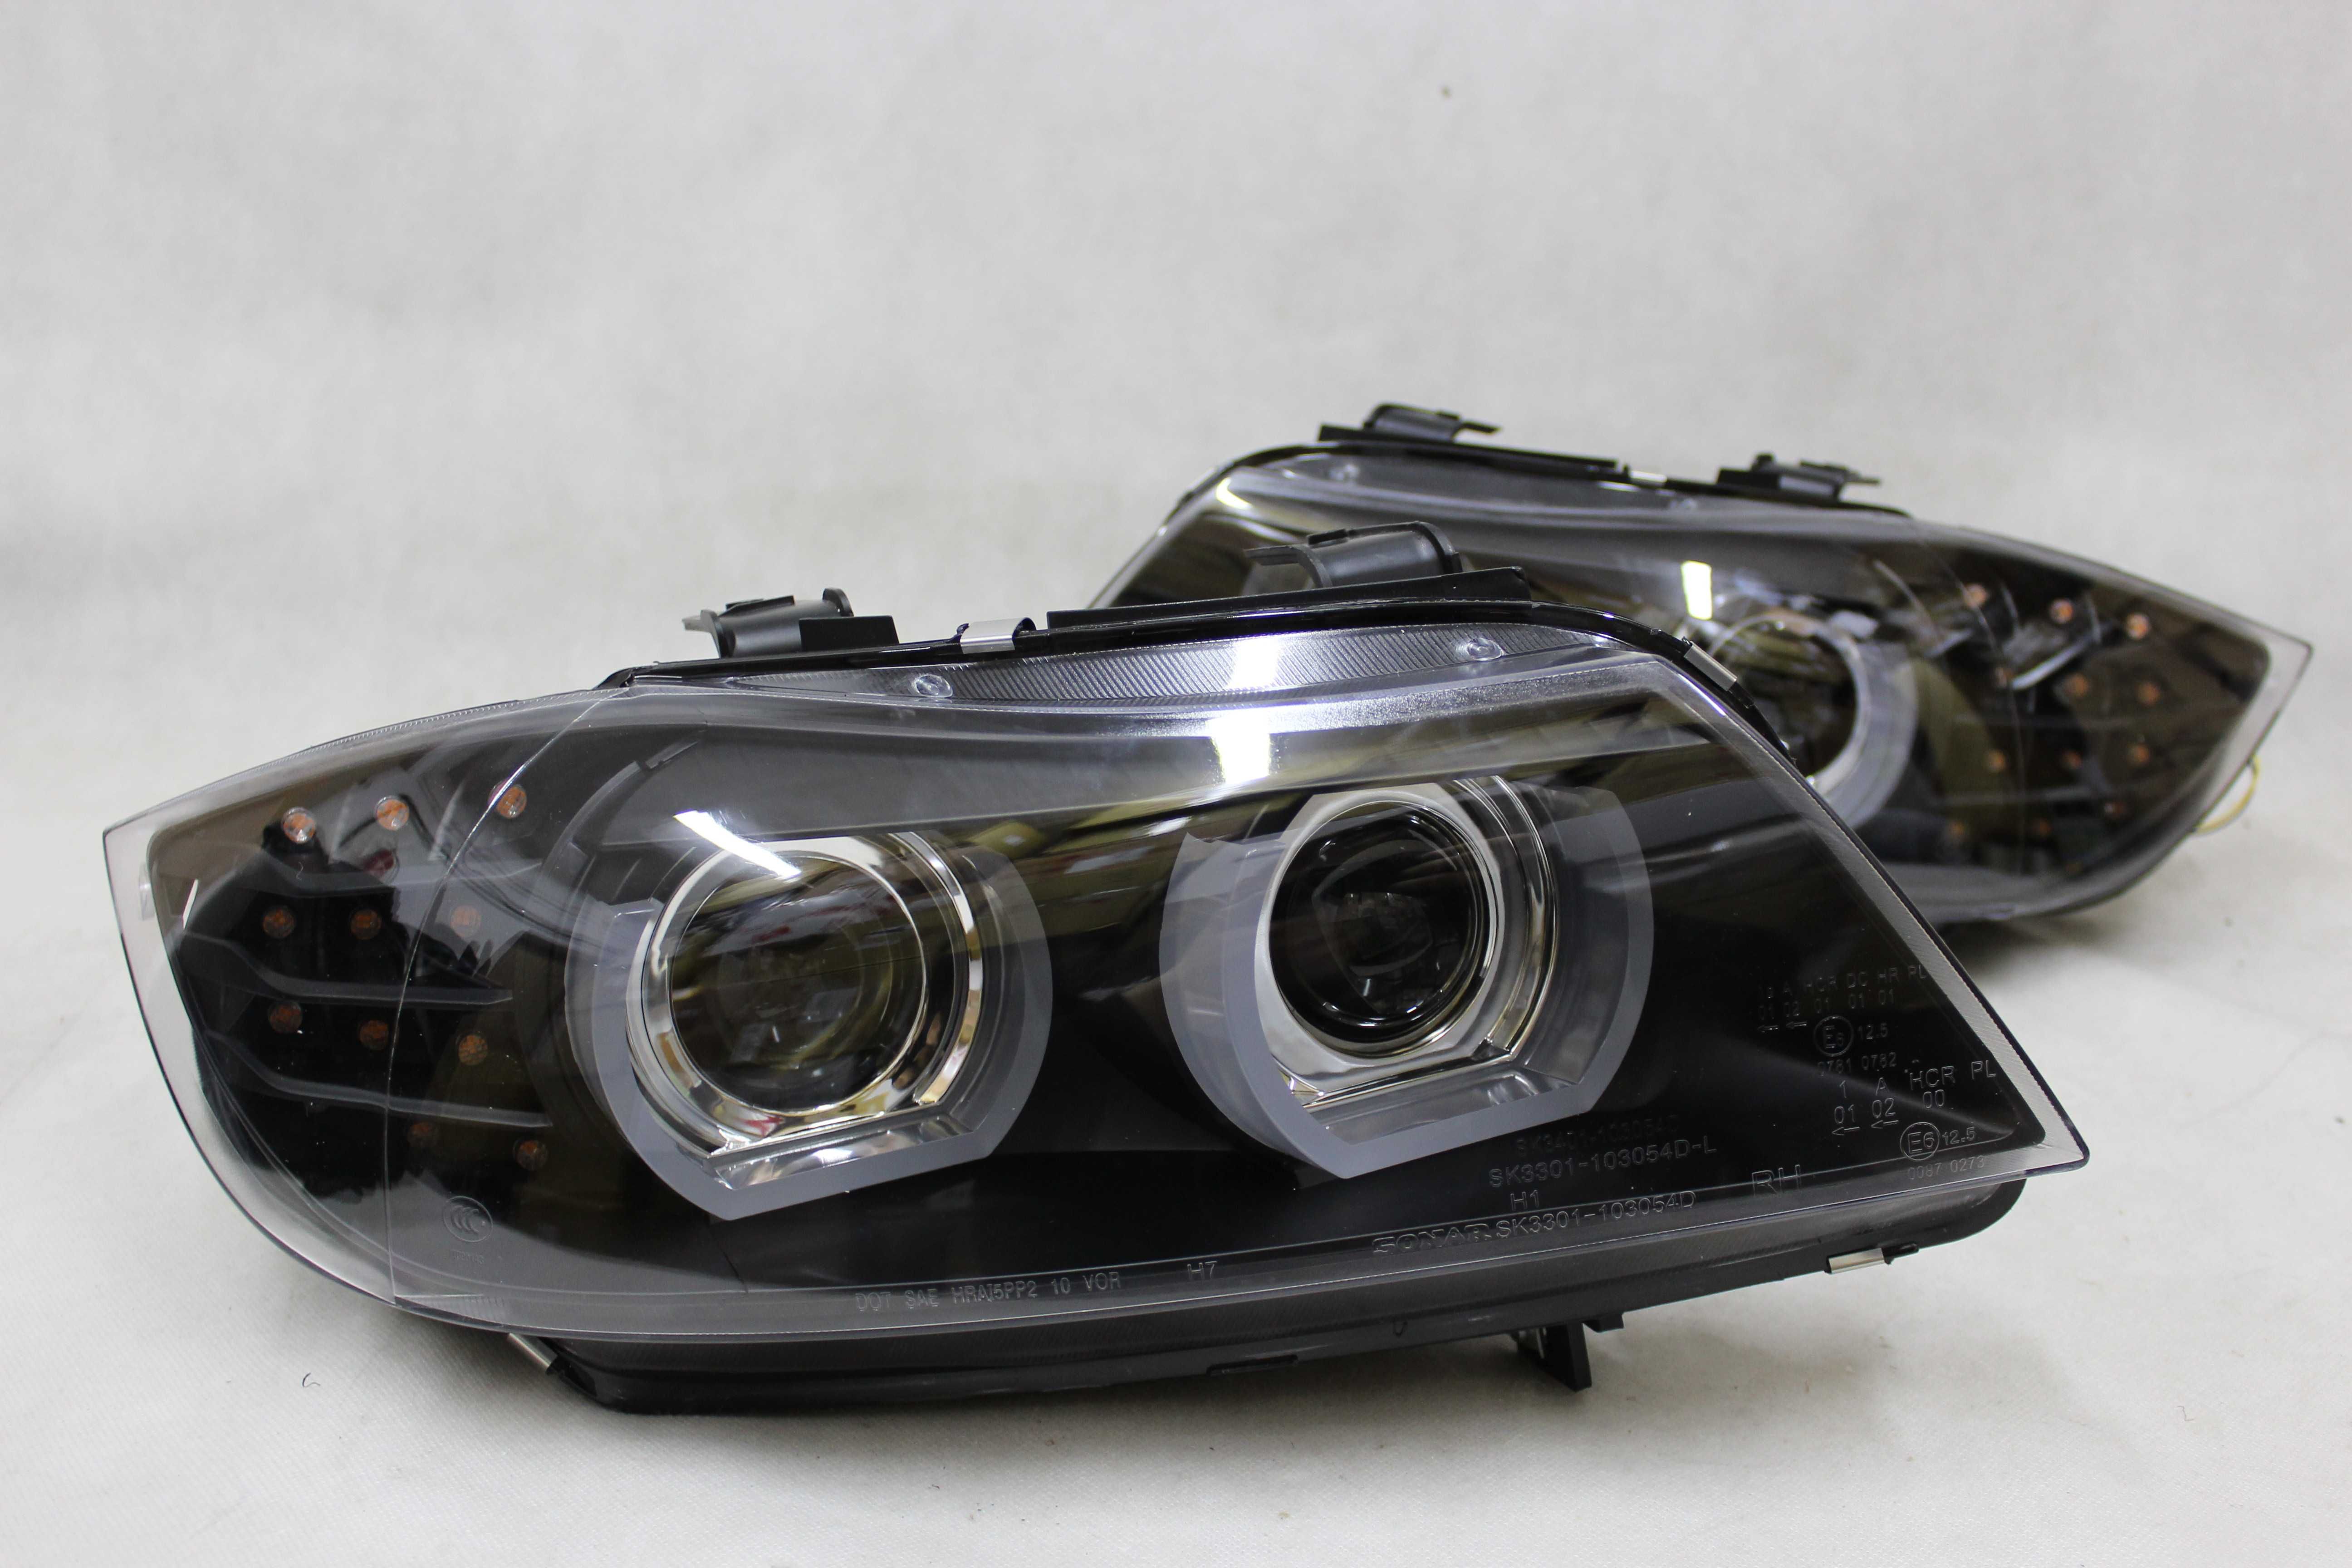 Lampy reflektory przednie przód BMW E90 09-11 D1S XENON LED U-BAR NOWE